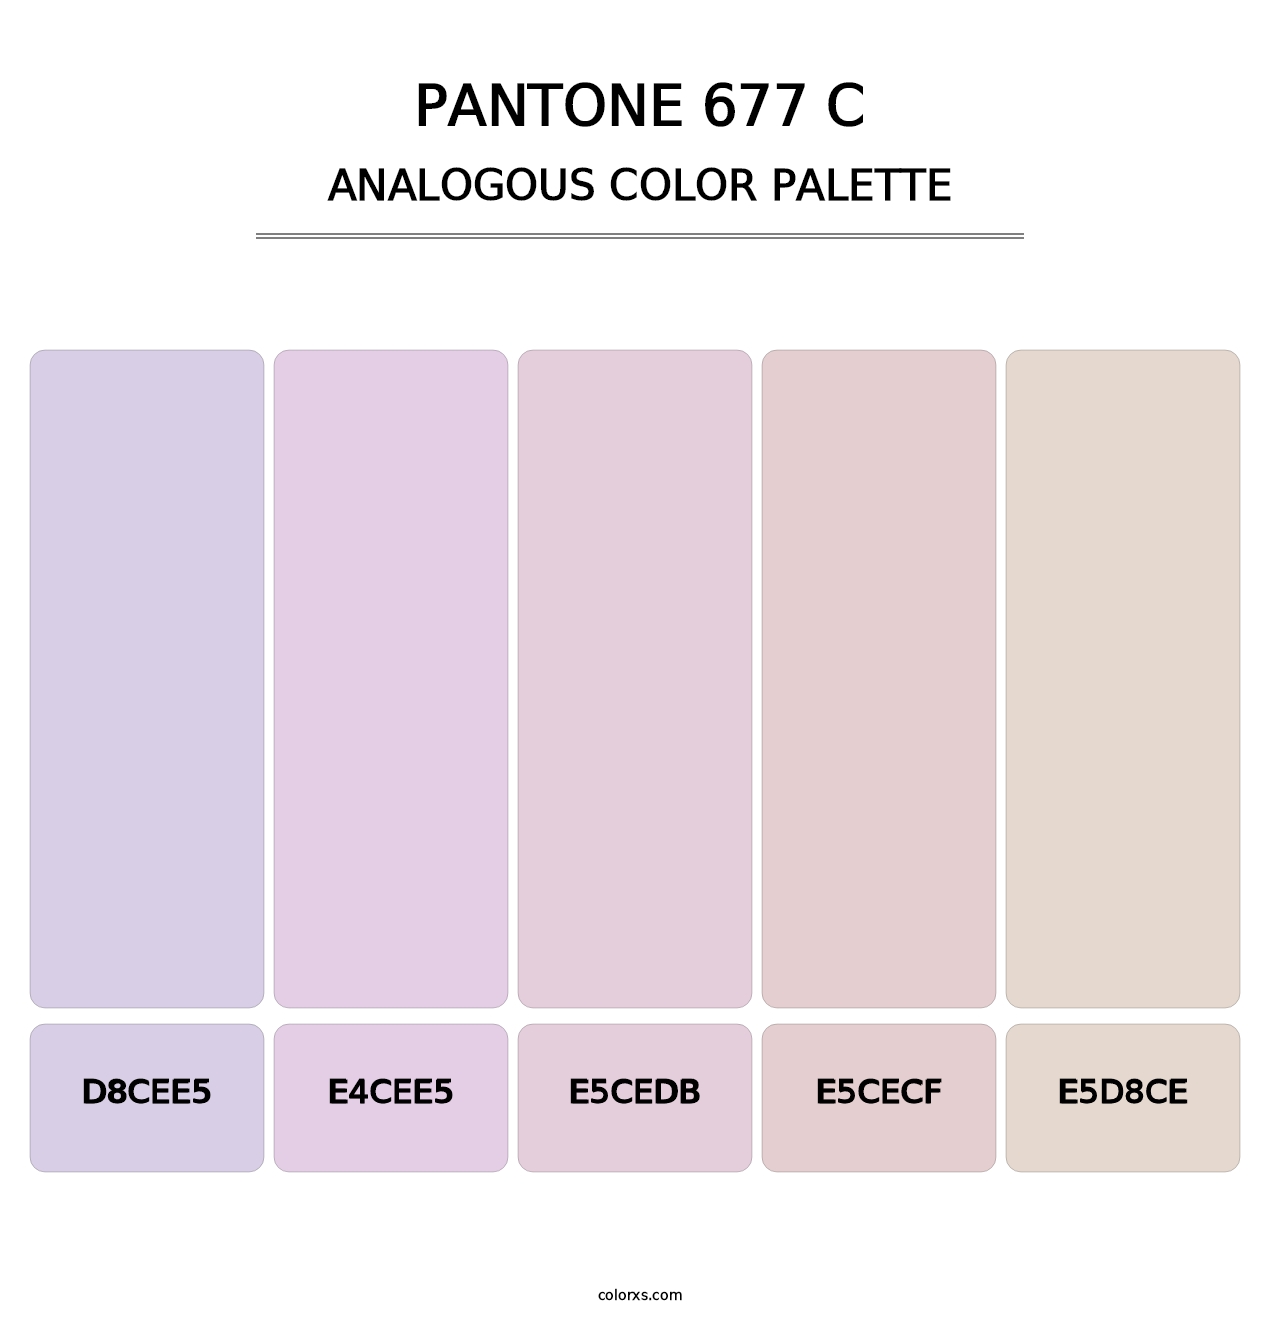 PANTONE 677 C - Analogous Color Palette